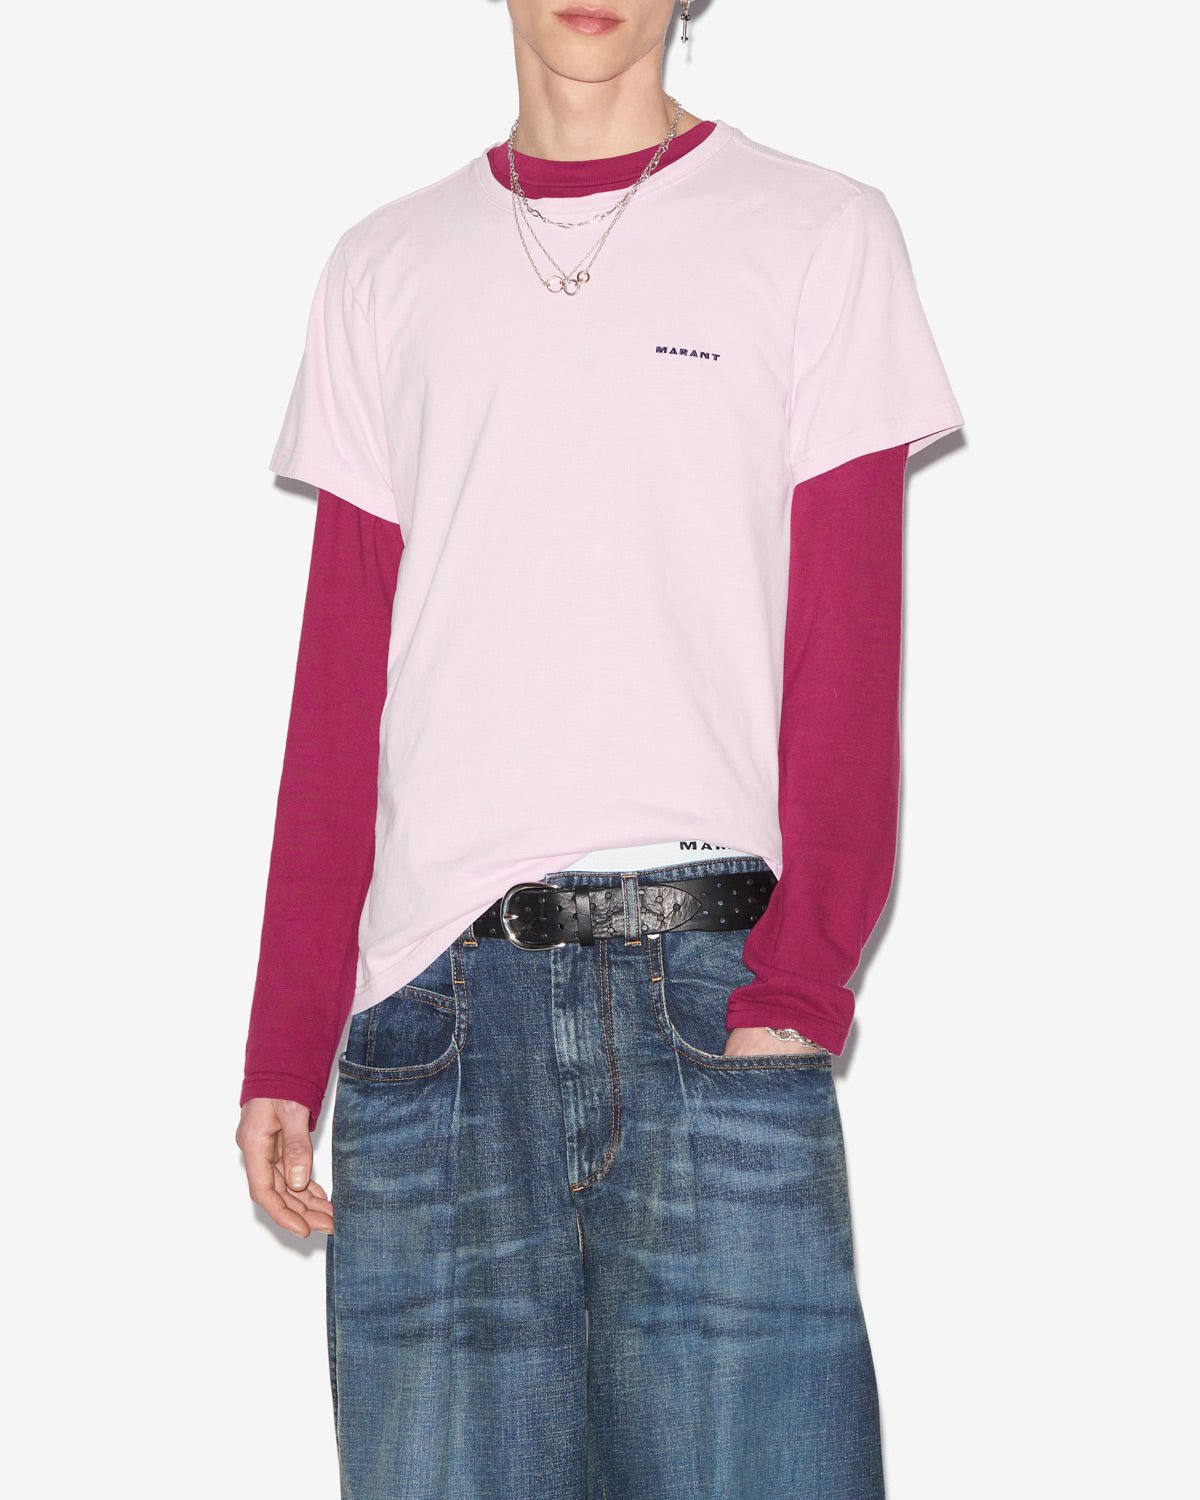 Zafferh t-shirt Man Light pink 5